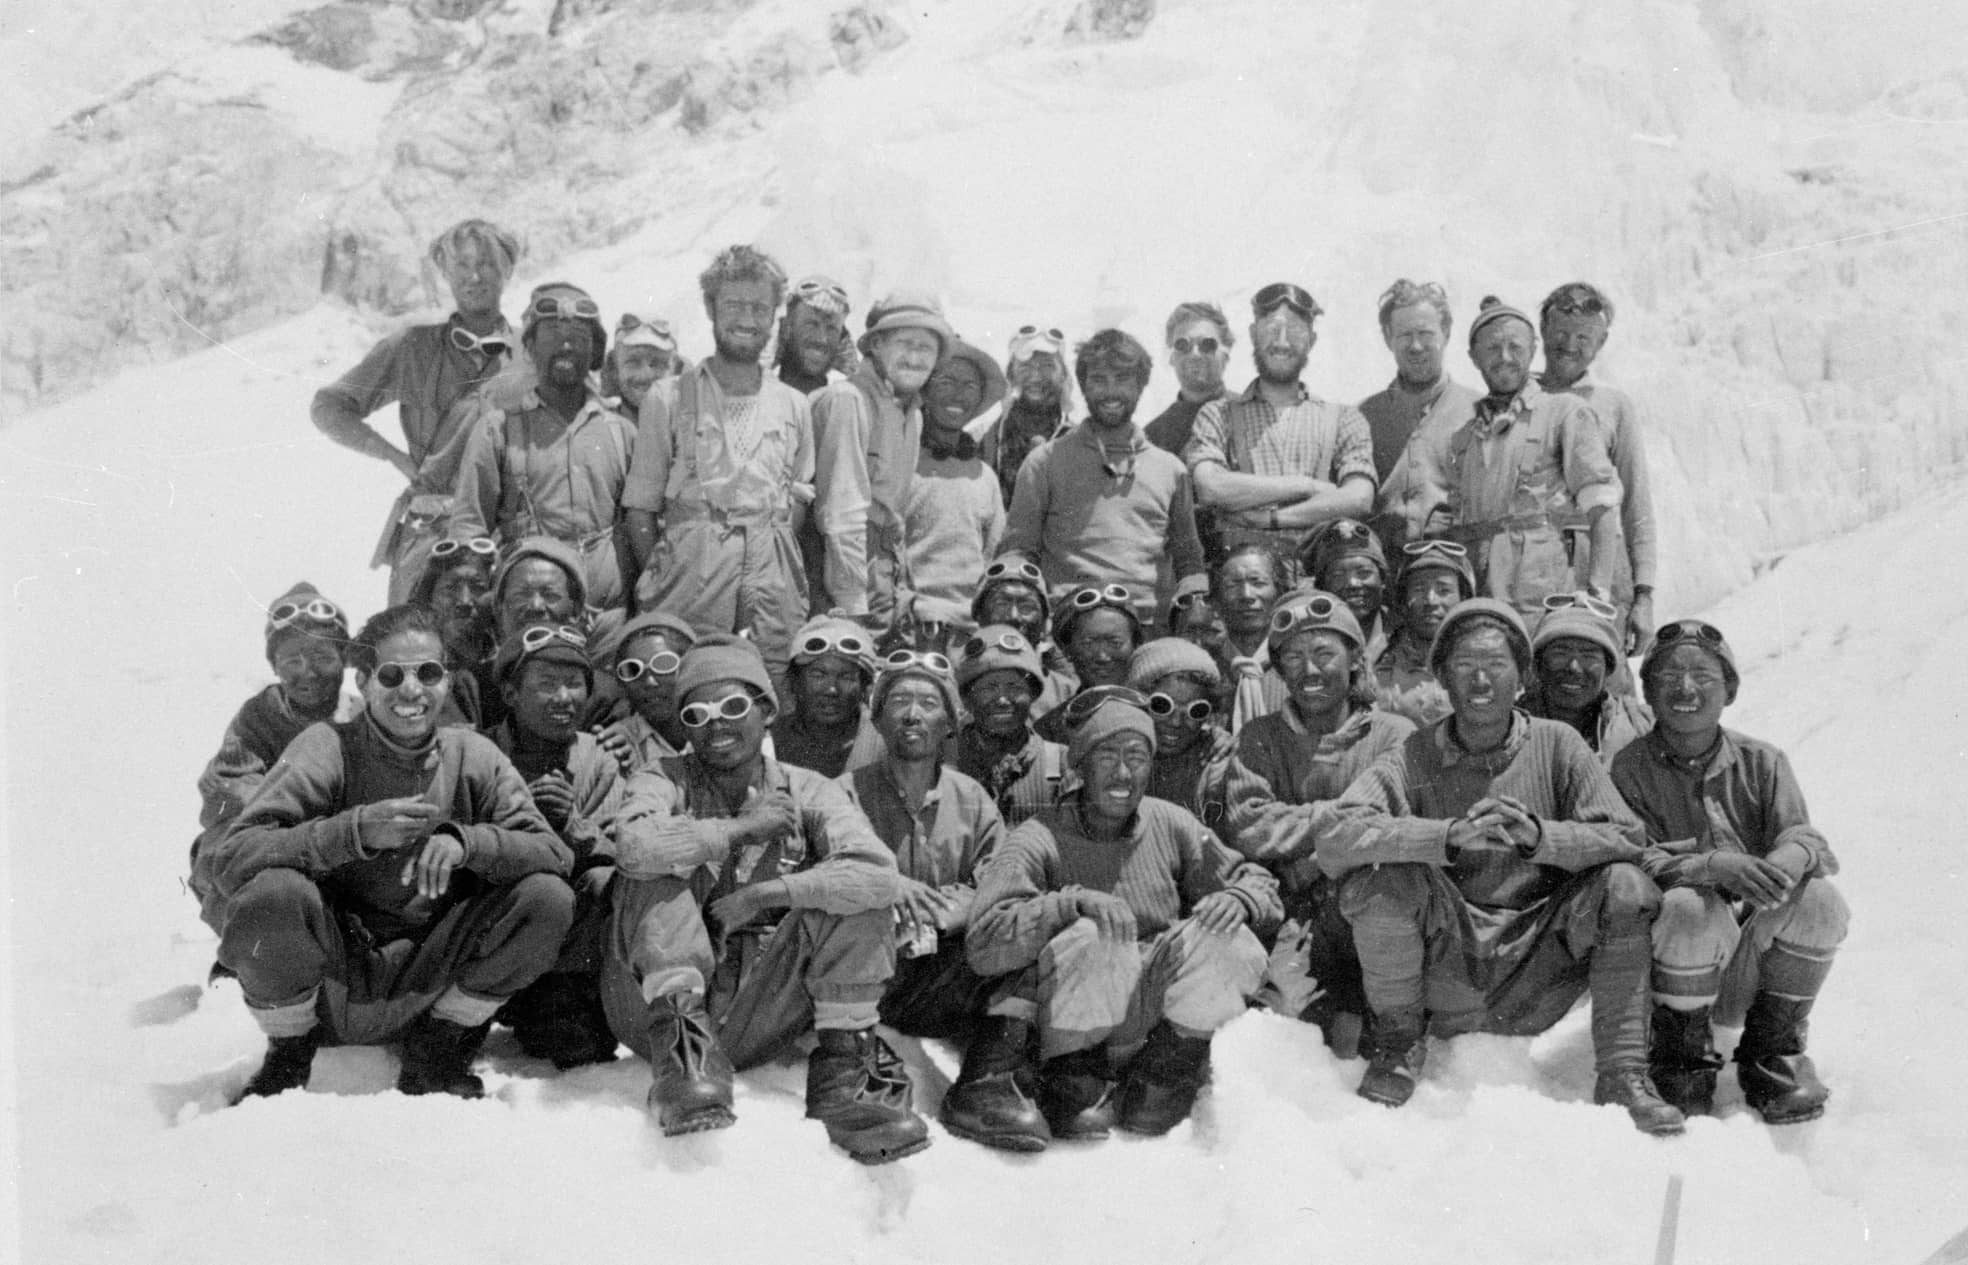 Zwei Männer schafften es am 29. Mai 1953 auf den Gipfel des Mount Everest, als erste Menschen der Geschichte: Edmund Hillary (stehend, 5. von links) und Tenzing Norgay (stehend, 7. von links). Für den Erfolg brauchte es aber ein ganzes Team, mit dabei Khanchha Sherpa (2. von rechts in der letzten sitzenden Reihe).